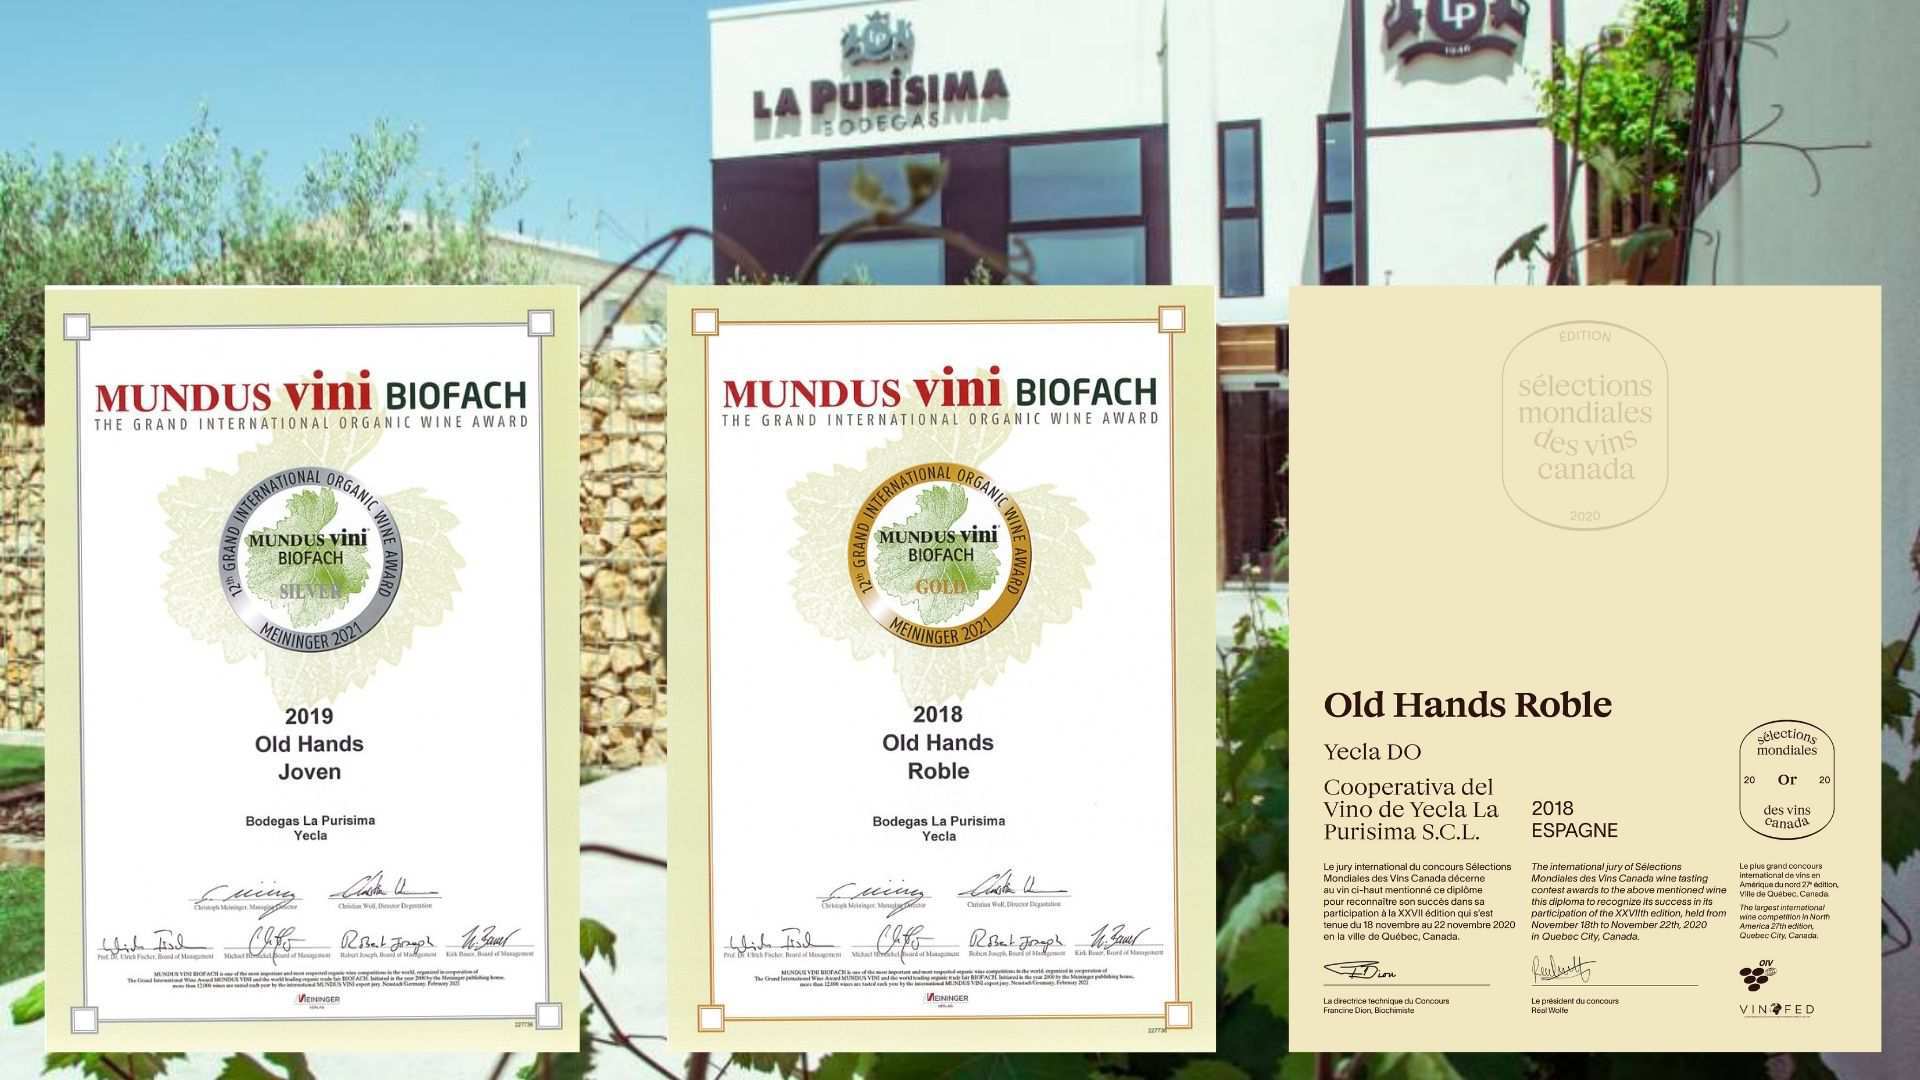 Old Hands Roble de Bodegas la Purísima premiado en Mundus Vini Biofach 2021 y del Mondiales des Vinds  Canáda